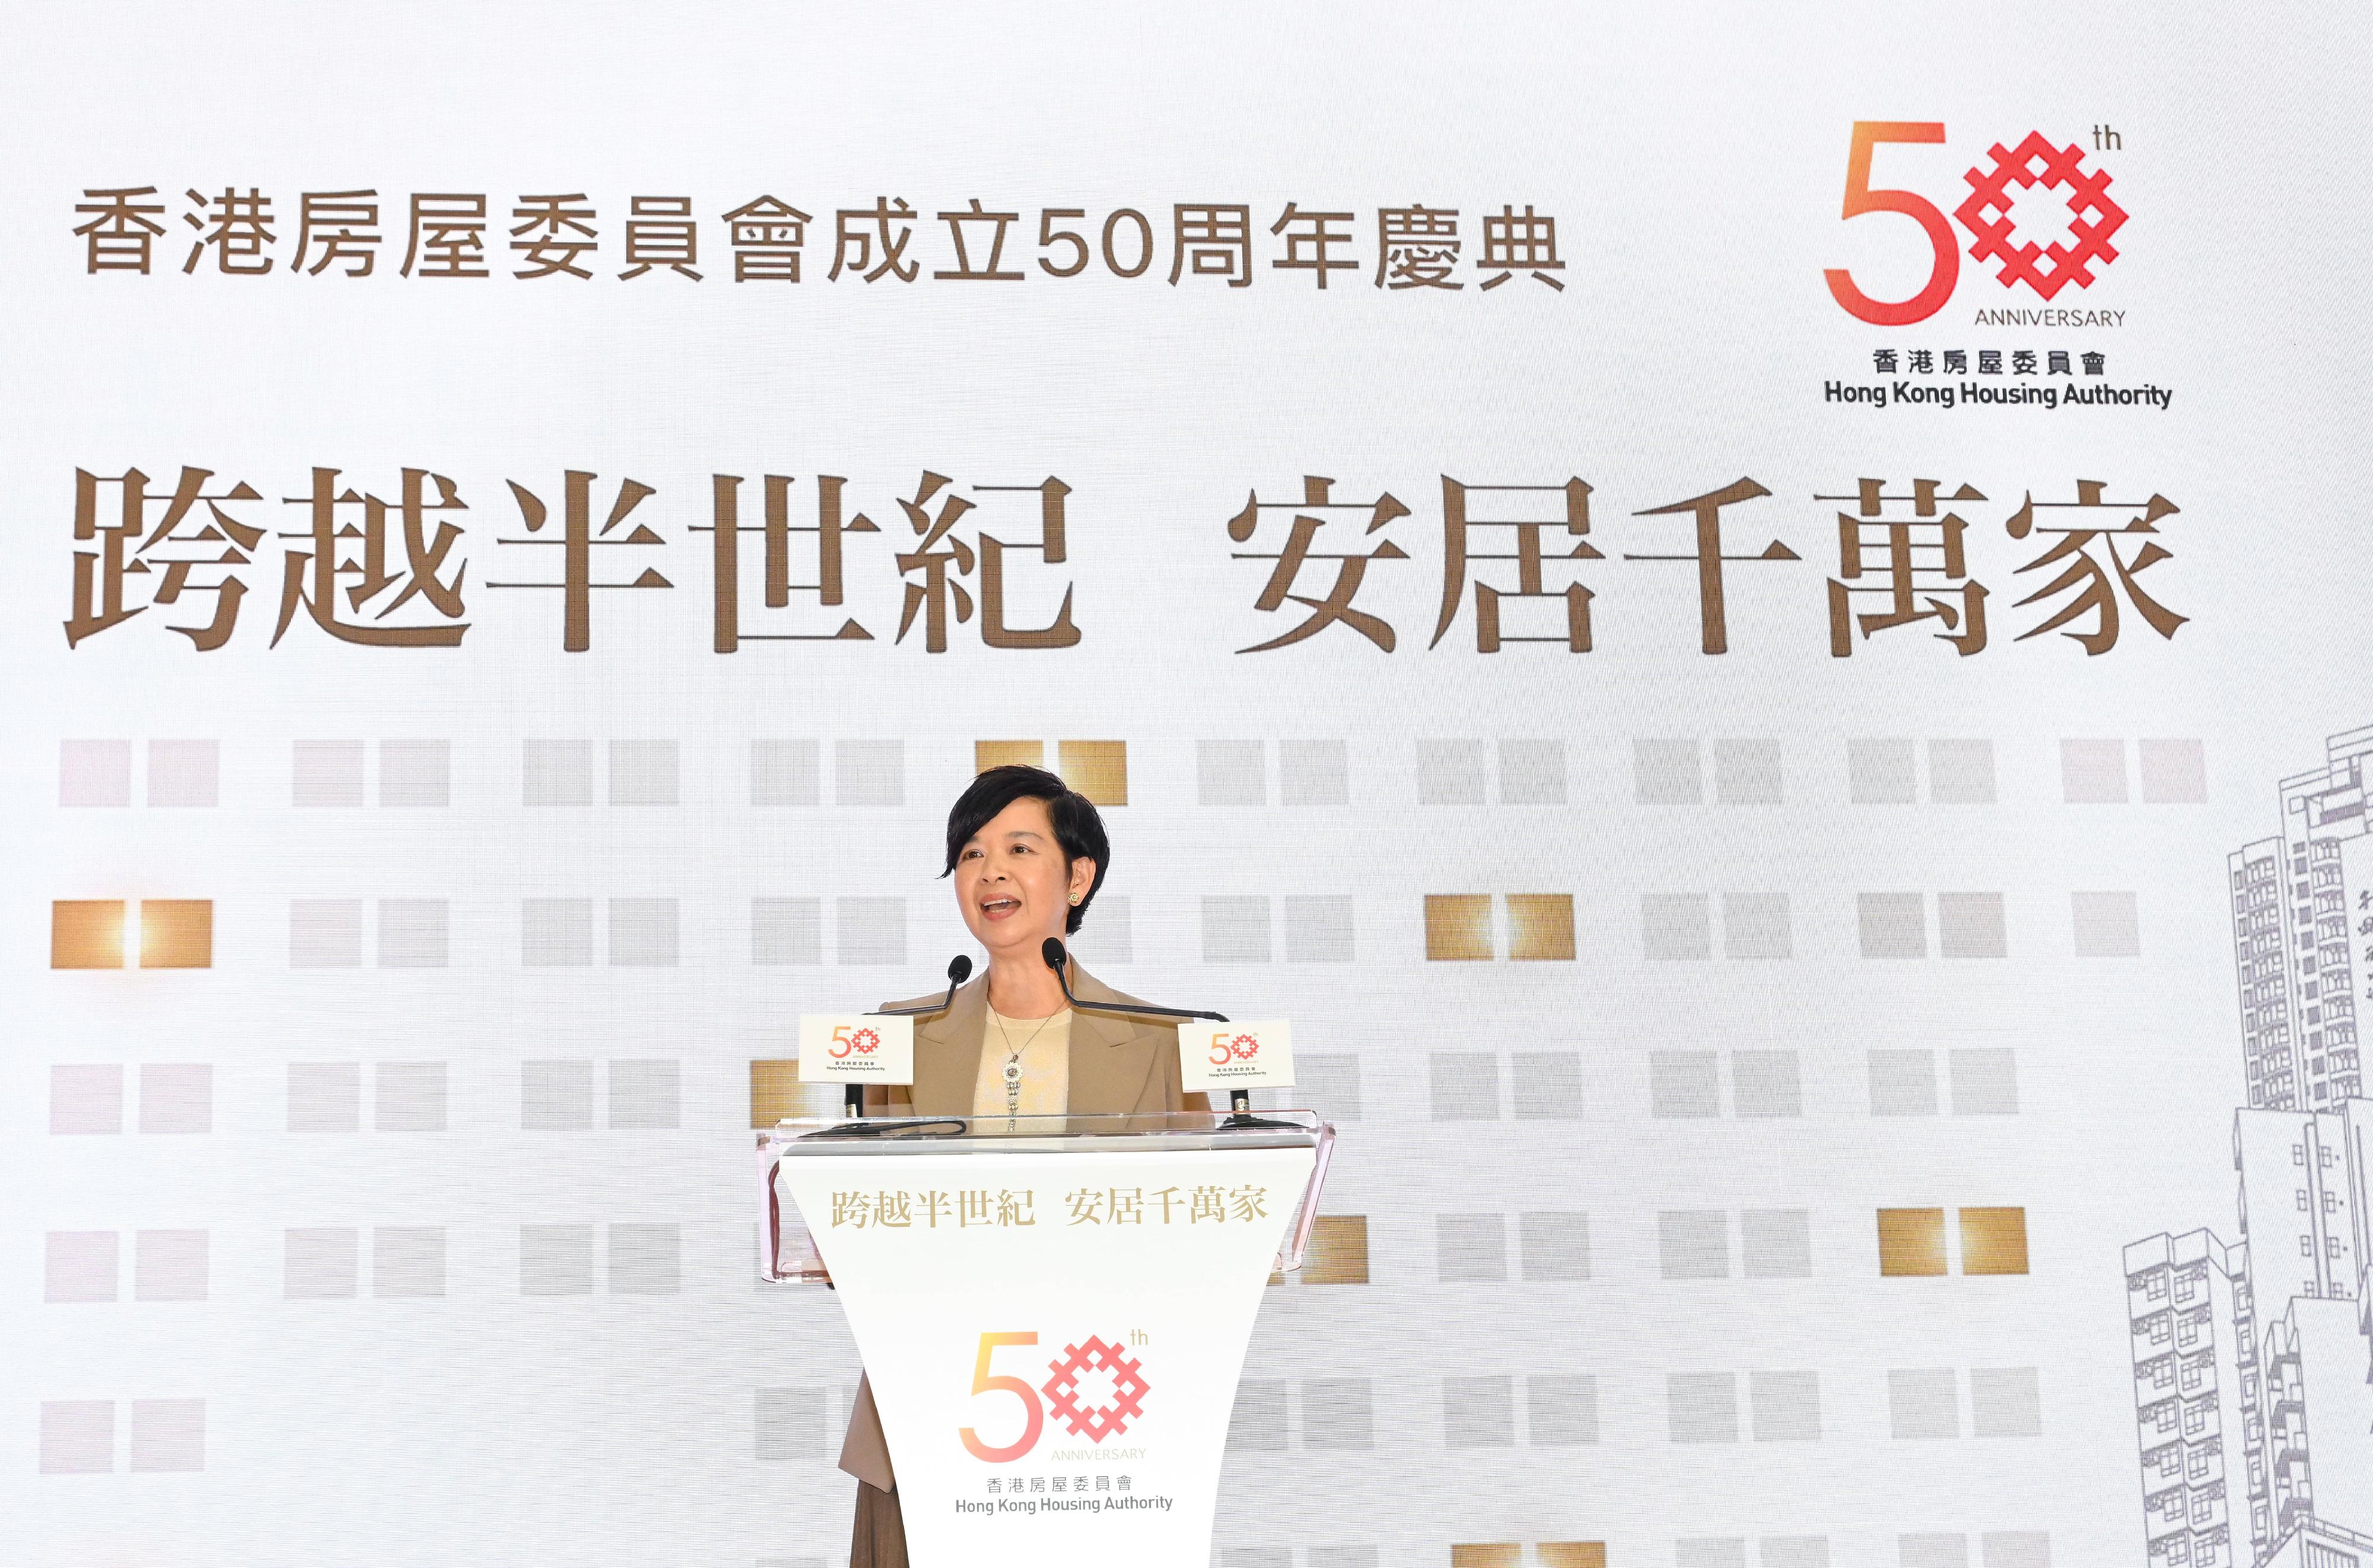 房屋局局長兼香港房屋委員會（房委會）主席何永賢今日（十二月十二日）在房委會轄下大本型商場出席房委會成立50周年慶典。圖示何永賢在慶典上致辭。